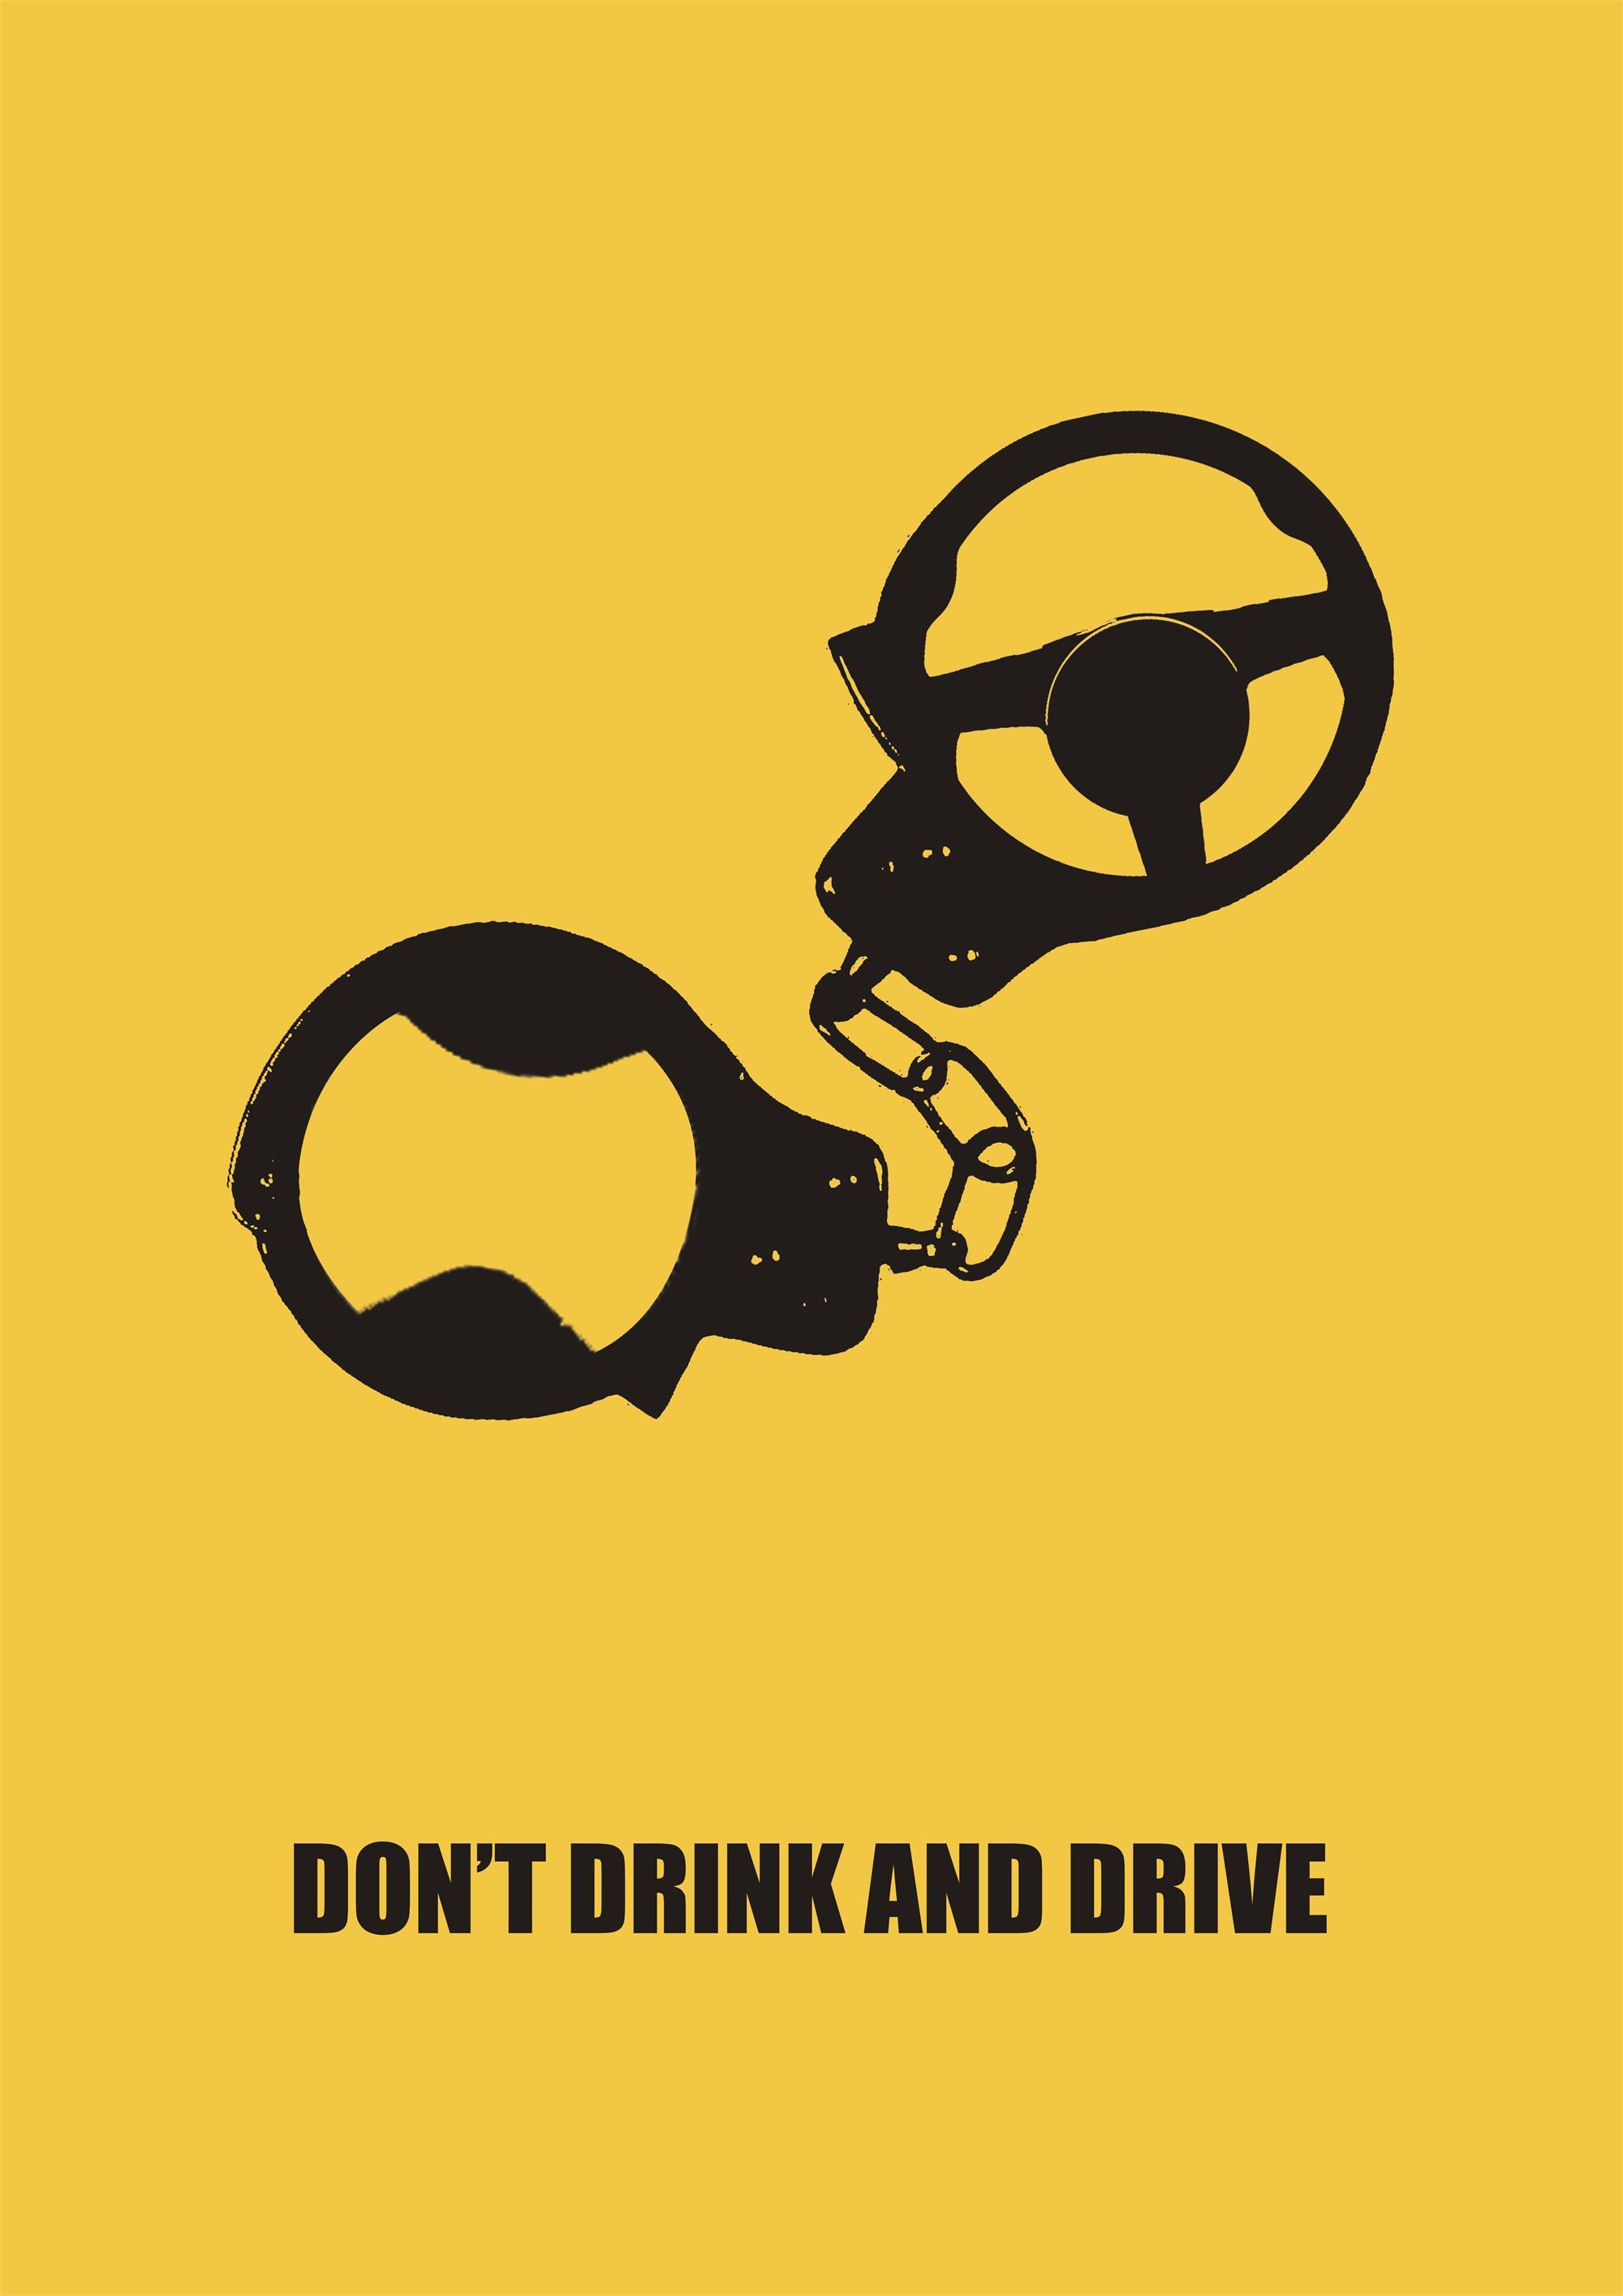 禁止酒驾图片,开车不喝酒宣传图片 - 伤感说说吧